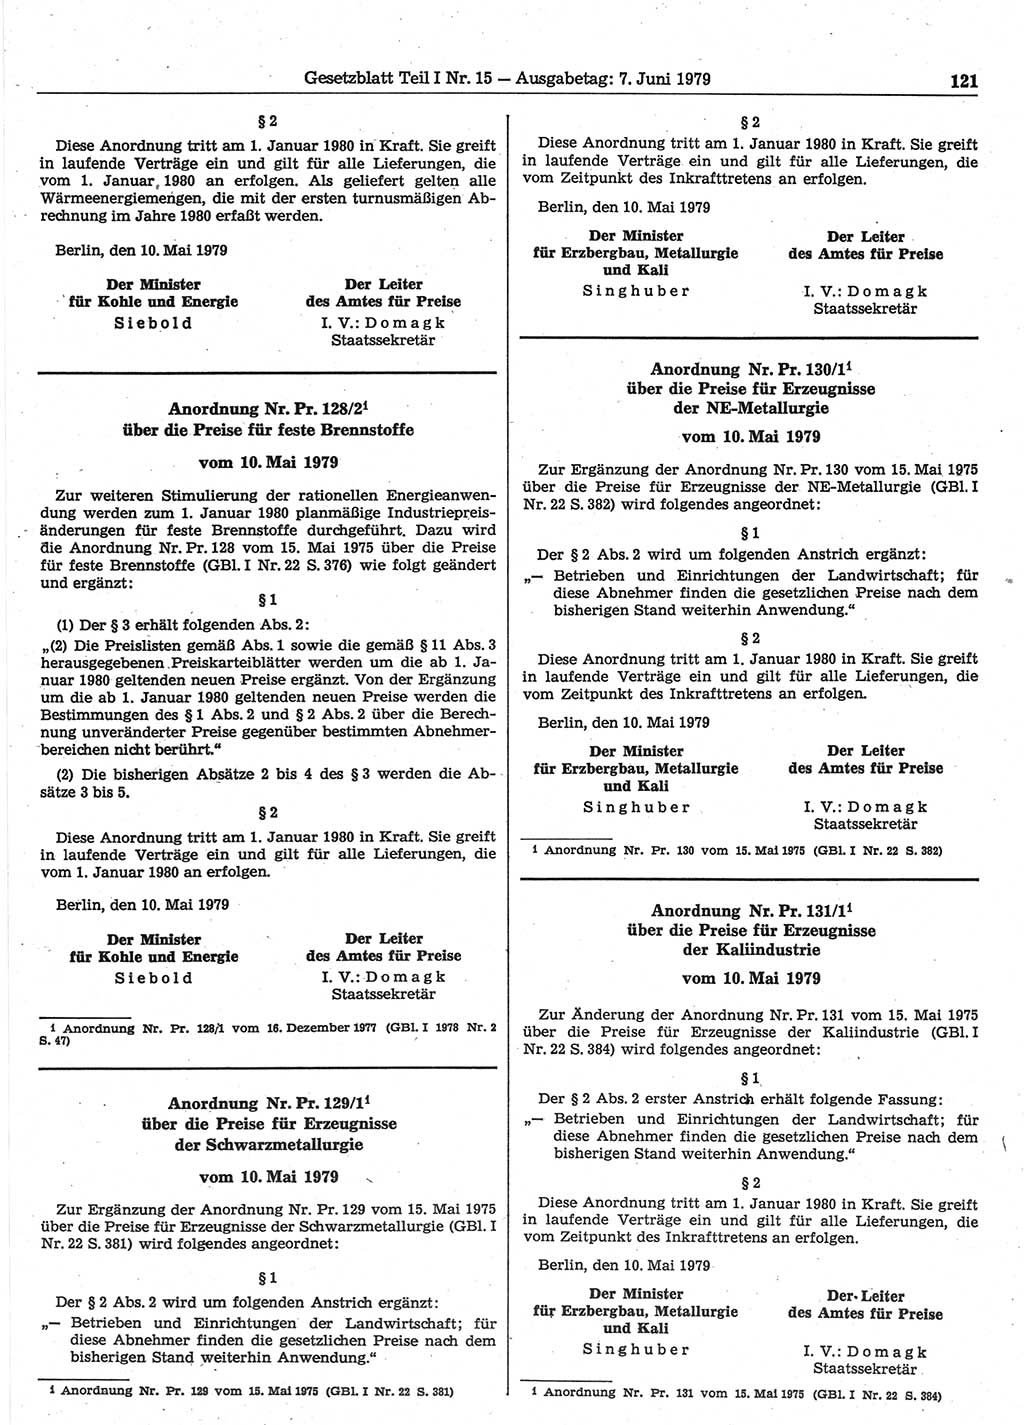 Gesetzblatt (GBl.) der Deutschen Demokratischen Republik (DDR) Teil Ⅰ 1979, Seite 121 (GBl. DDR Ⅰ 1979, S. 121)